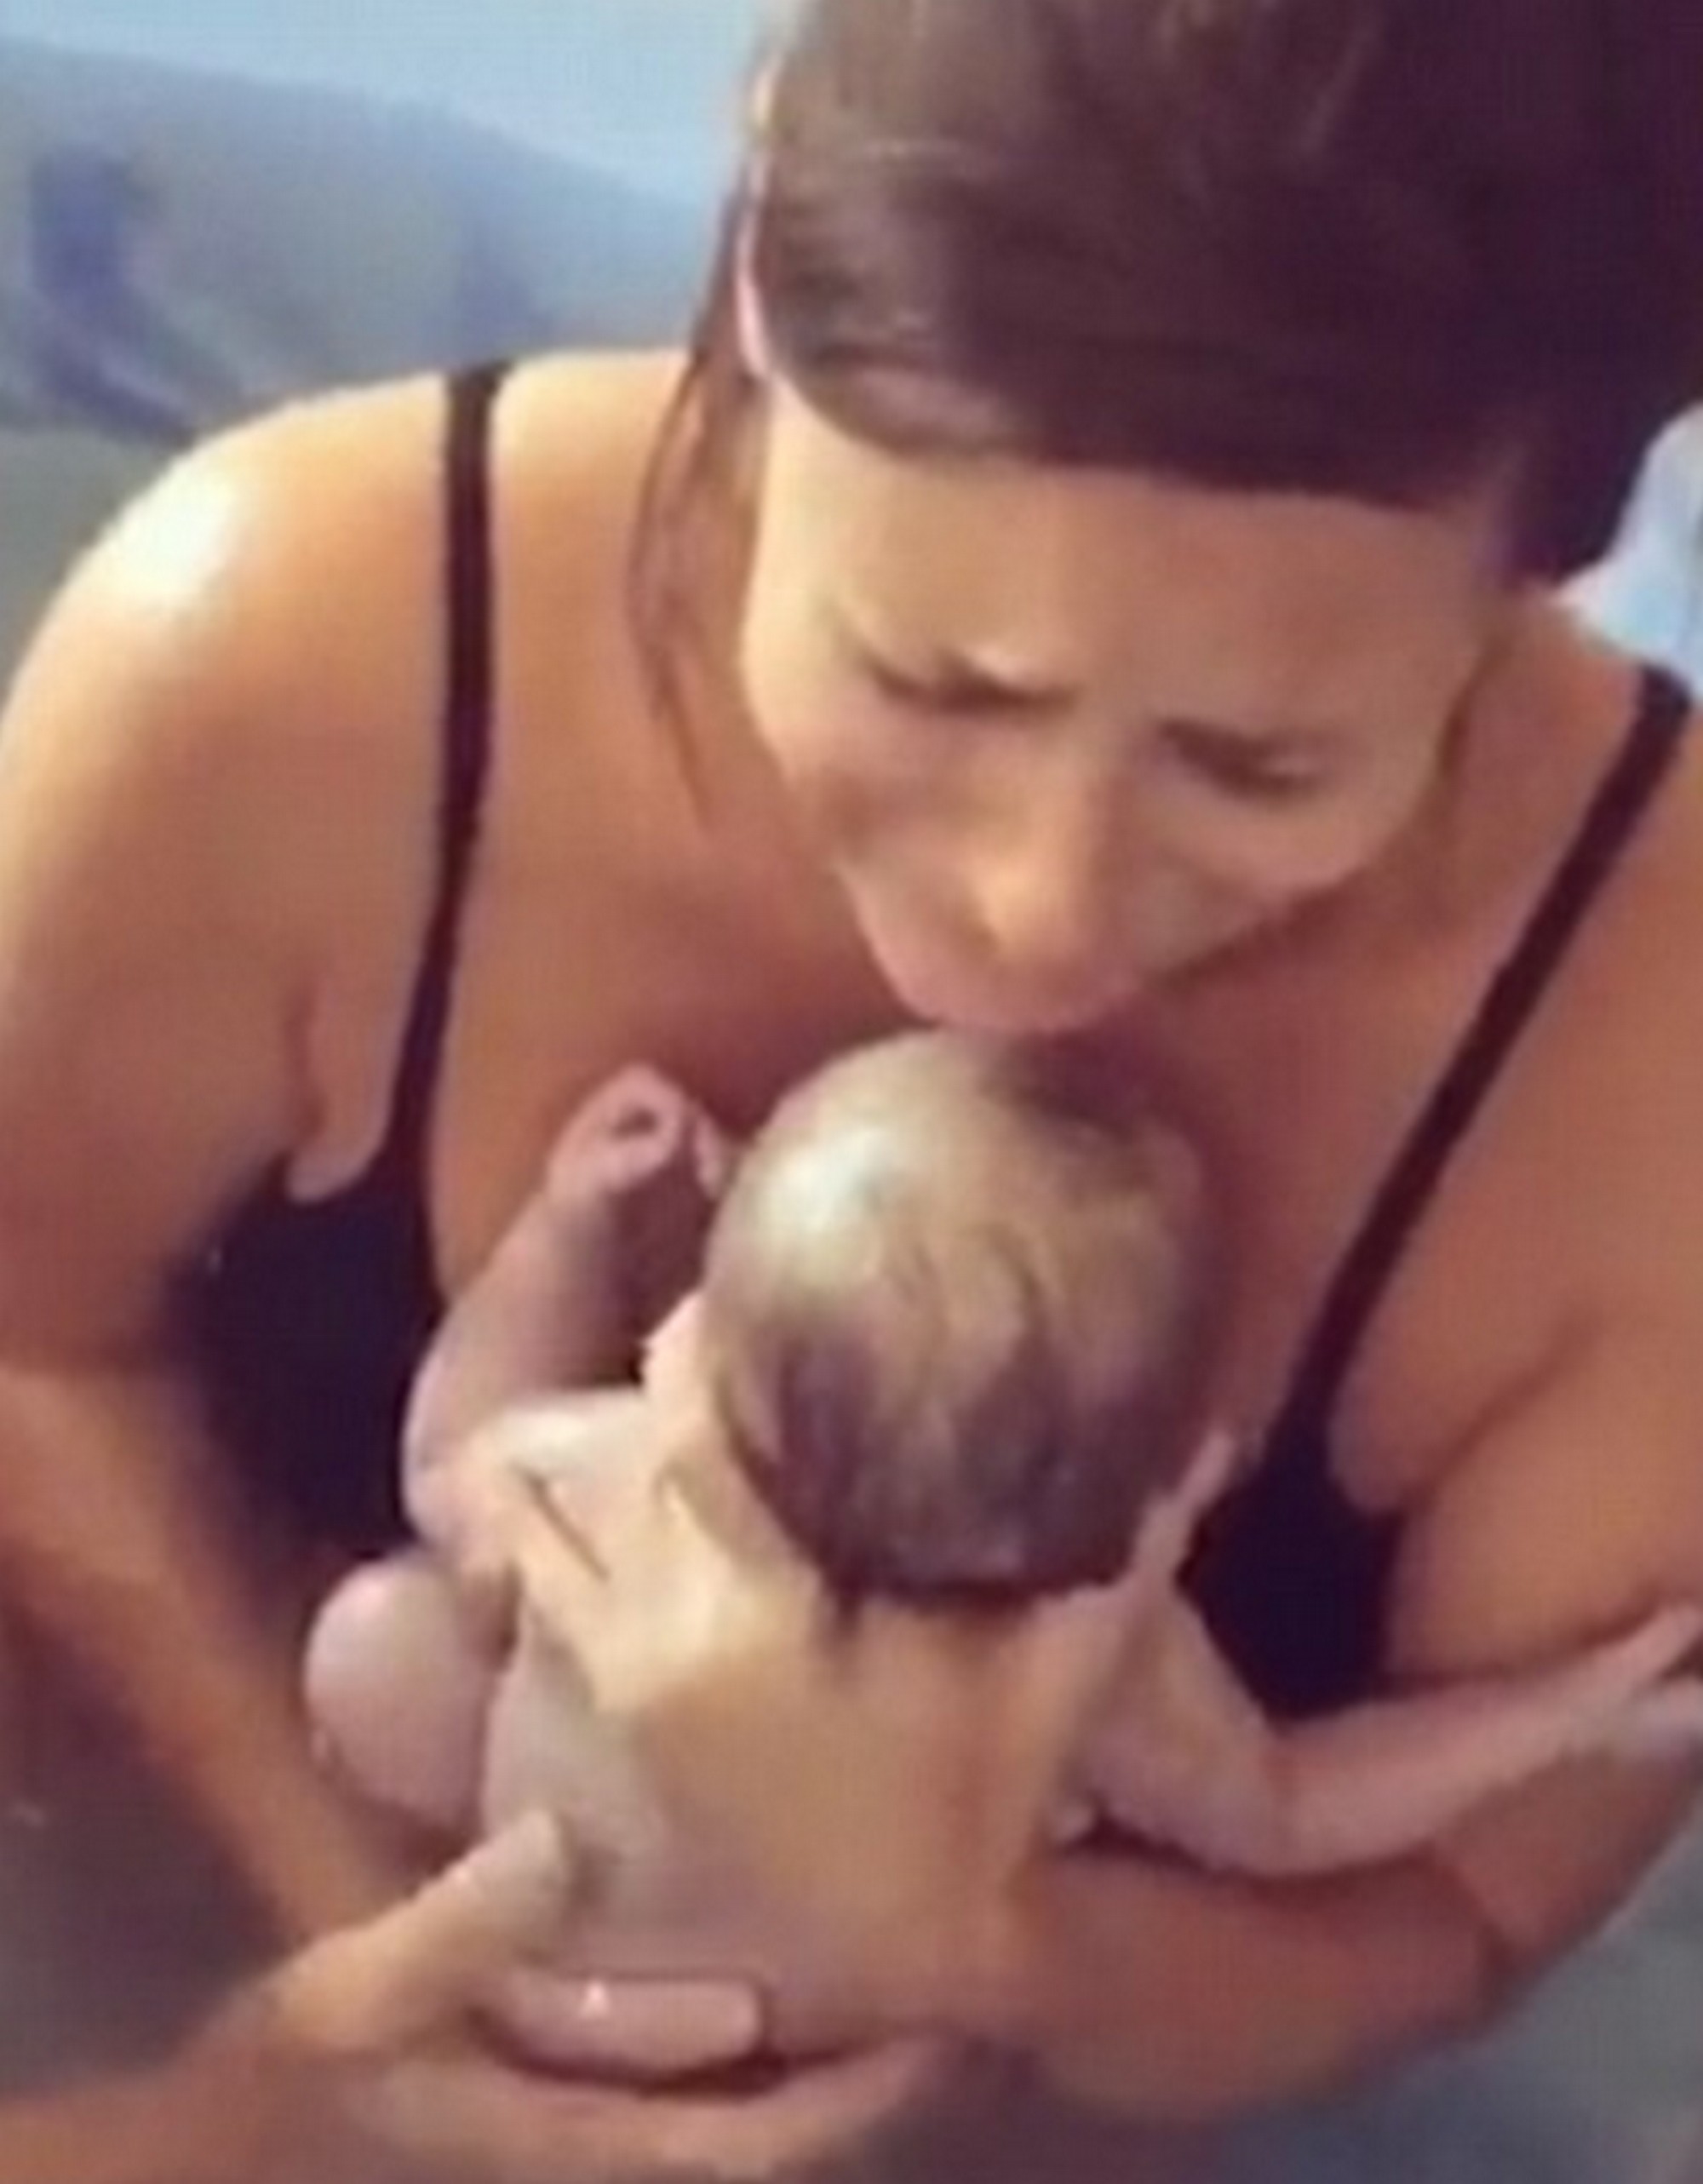 Hihetetlen pillanat- ilyen gyors szülést is ritkán látni- videó